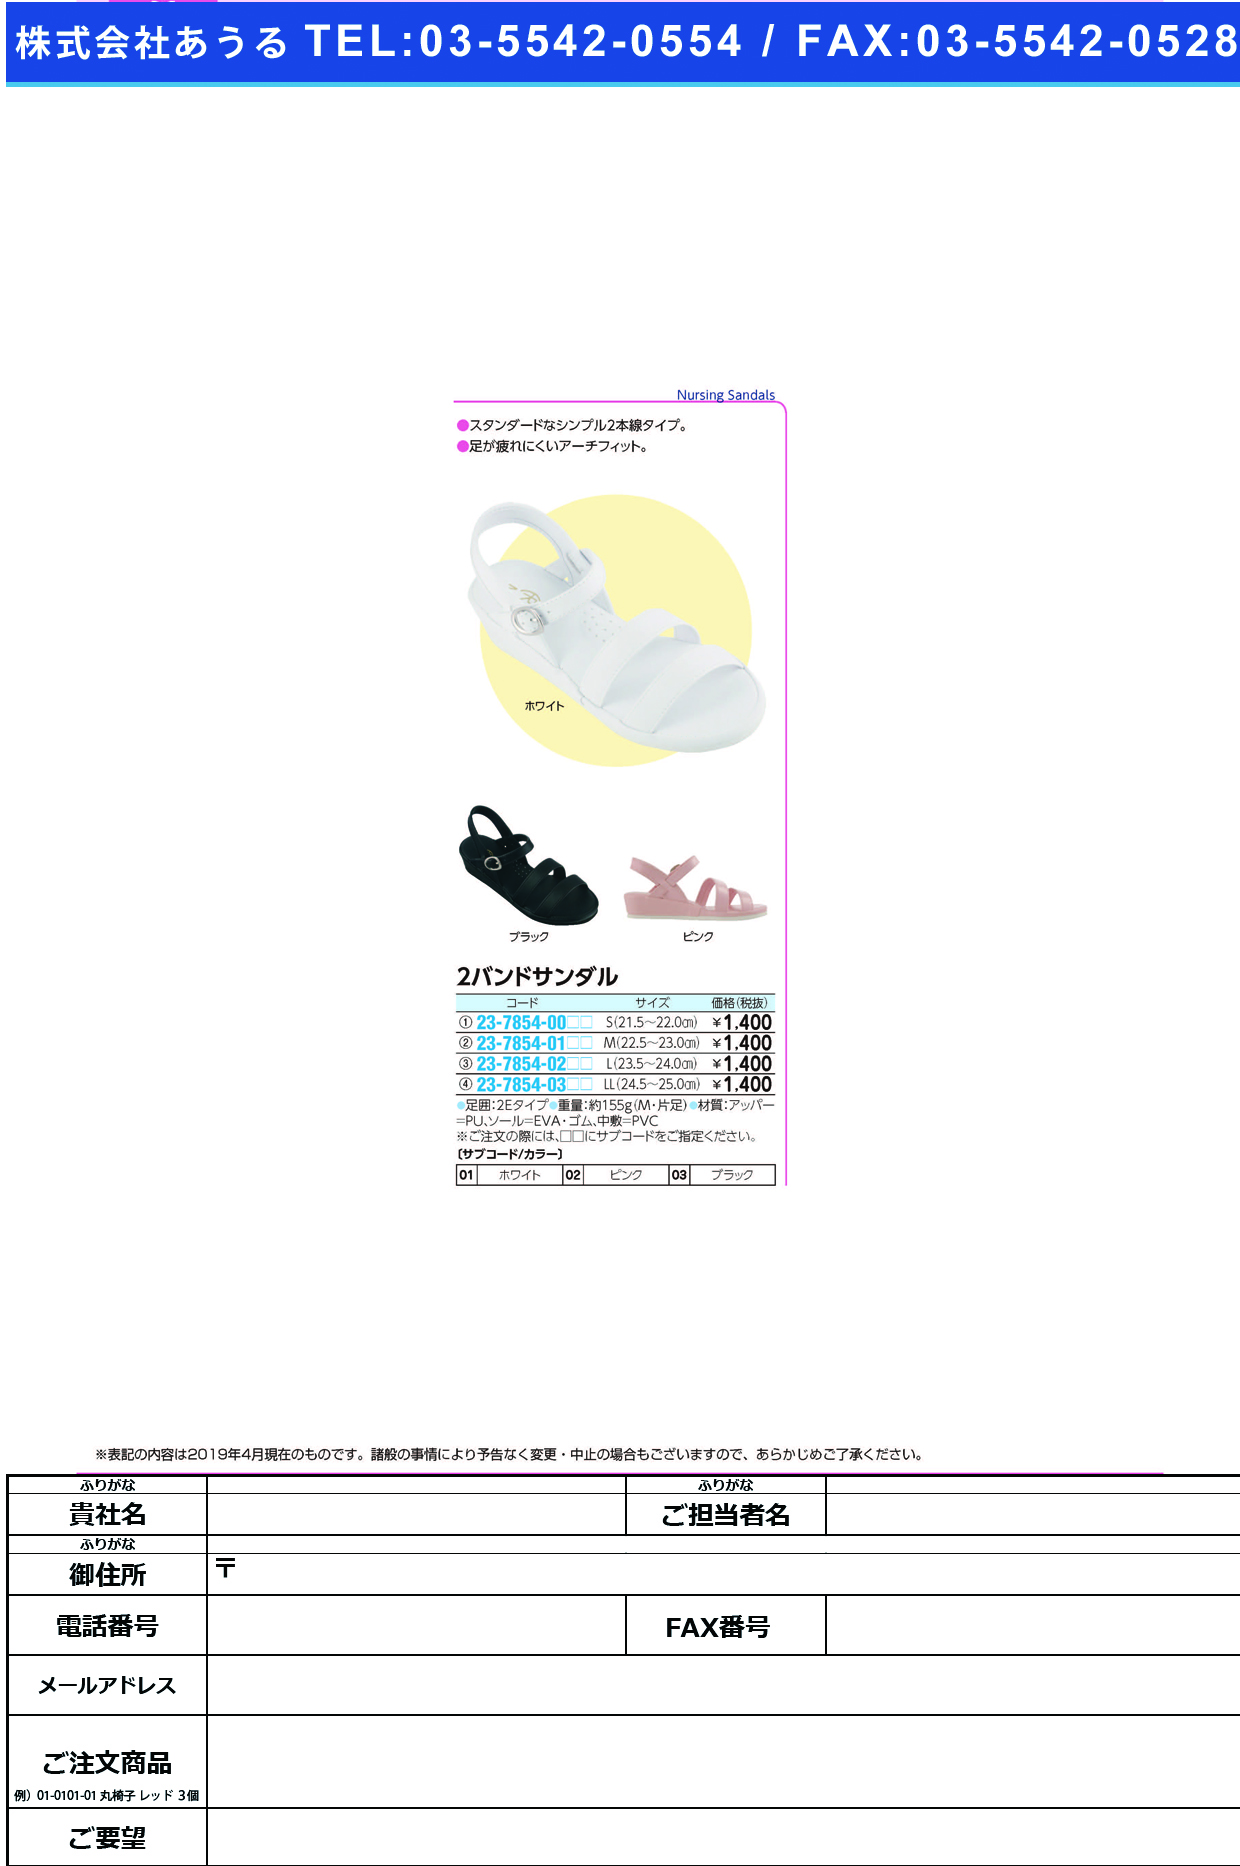 (23-7854-01)２バンドサンダル M(22.5-23.0CM) ﾂｰﾊﾞﾝﾄﾞｻﾝﾀﾞﾙ ホワイト(ファーストレイト)【1足単位】【2019年カタログ商品】